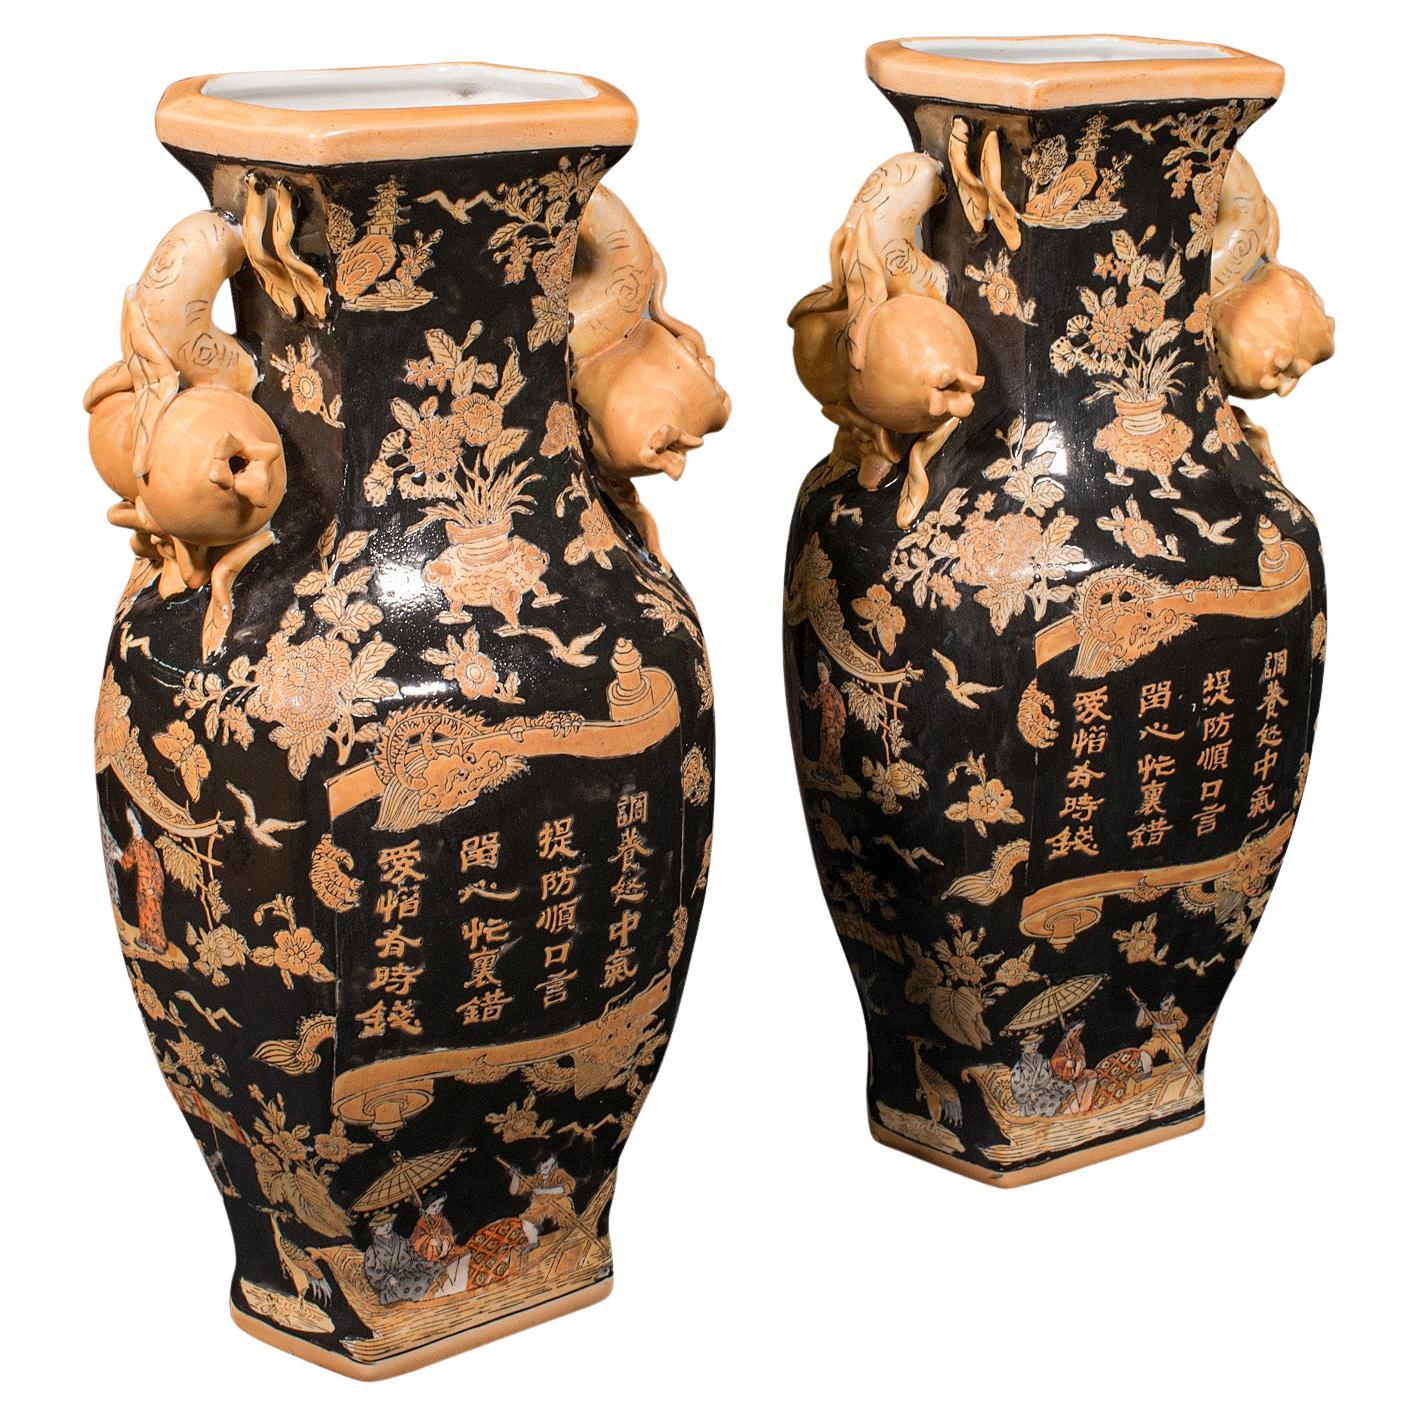 Paar dekorative Vintage-Vasen, chinesisch, Keramik, Urne mit getrockneter Blumen, spätes 20. Jahrhundert